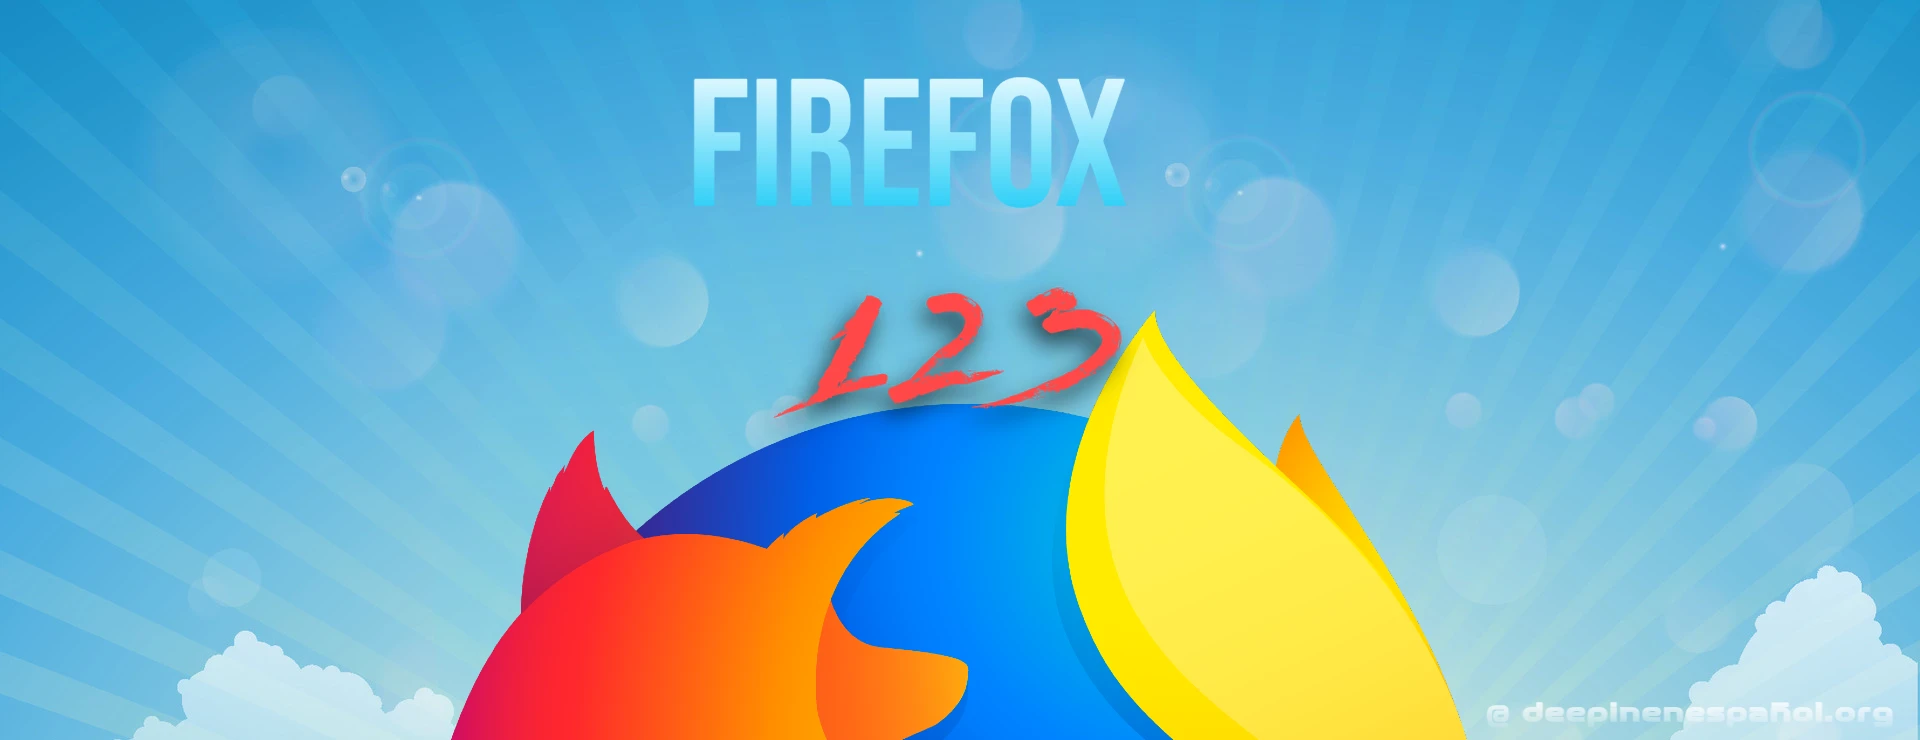 Firefox 123